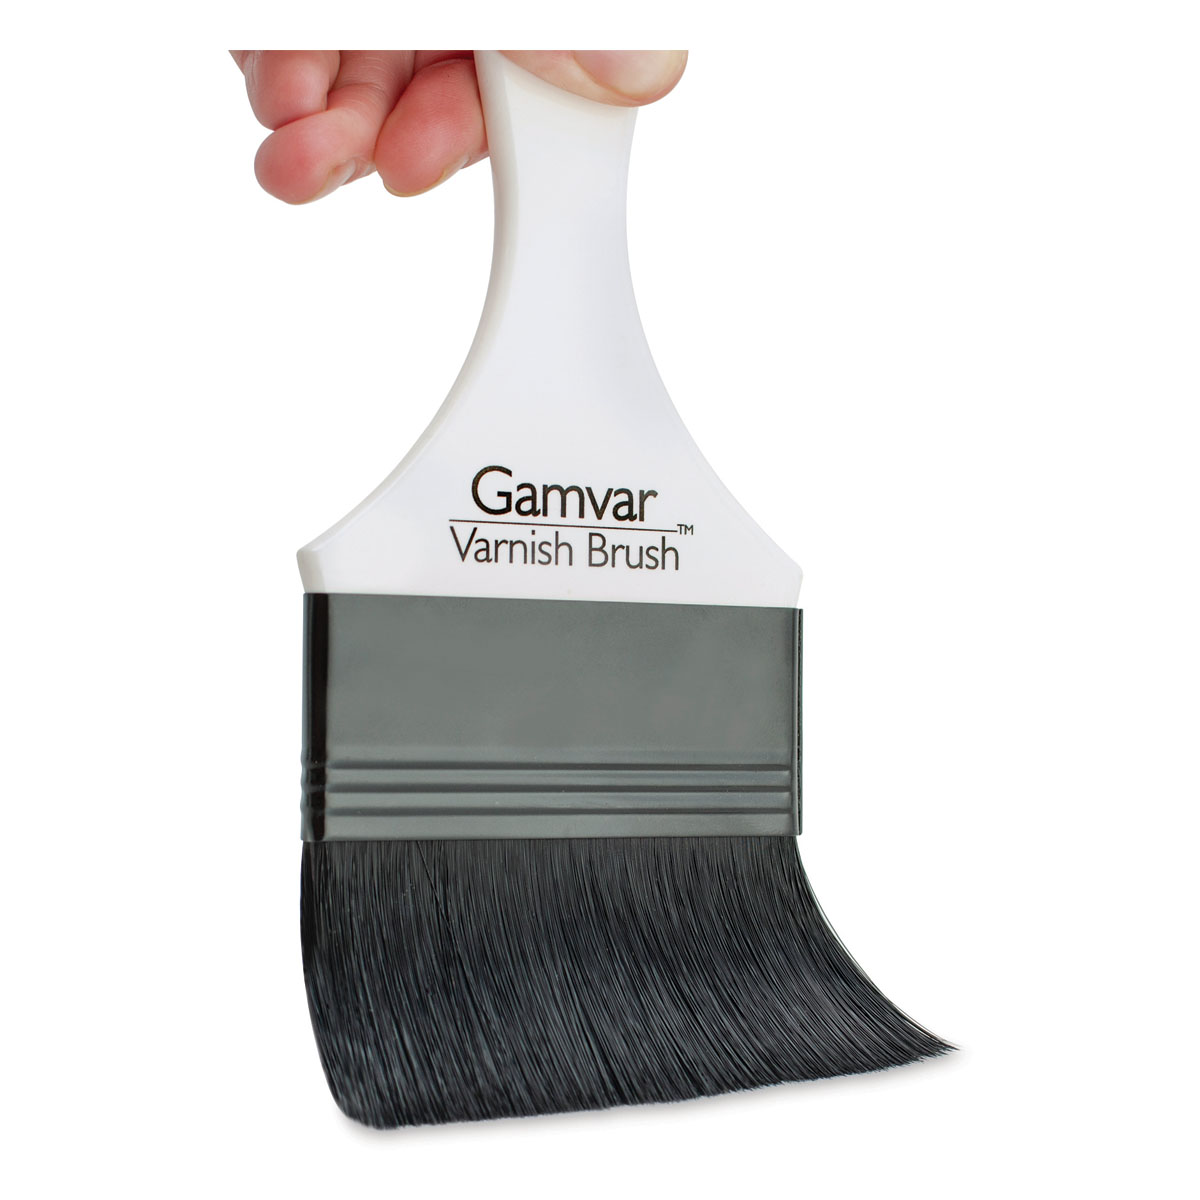 GAM Hi-Tech White Bristle Marine Varnish Brush